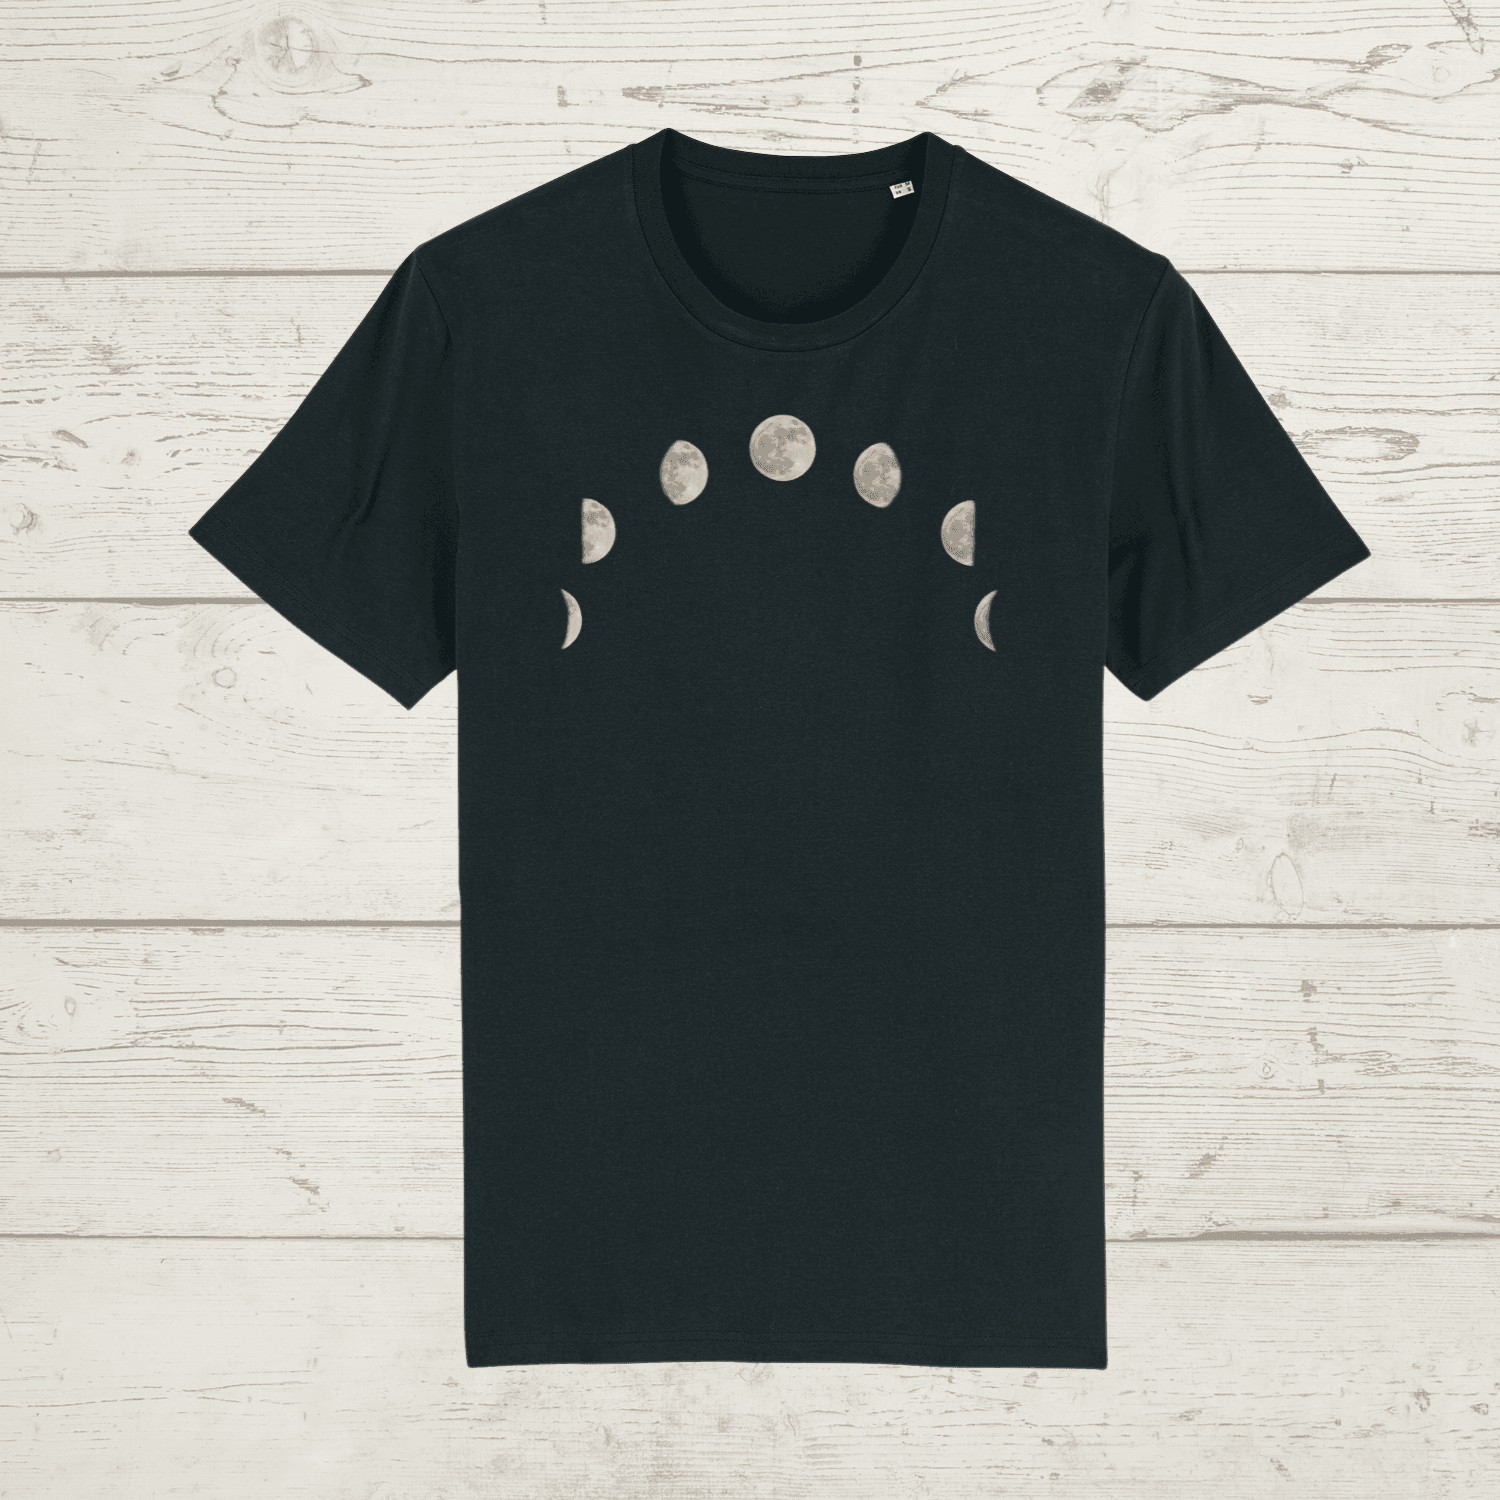 Unisex moon phase t-shirt - black / xx-small - unisex